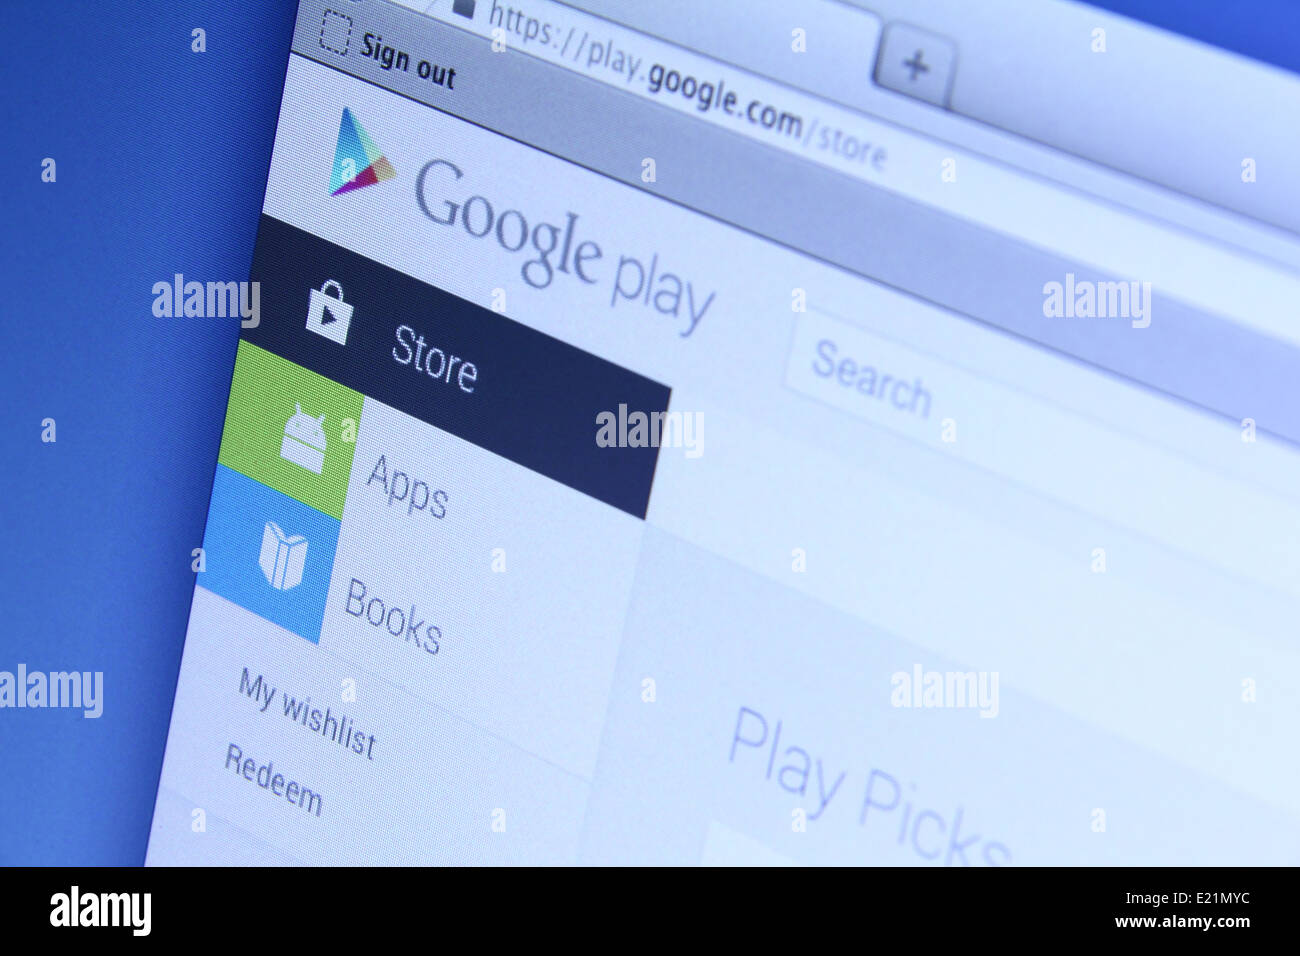 Photo de Google Play page web sur un écran de surveillance. Google Play est l'app store pour les smartphones et tablettes Android Banque D'Images